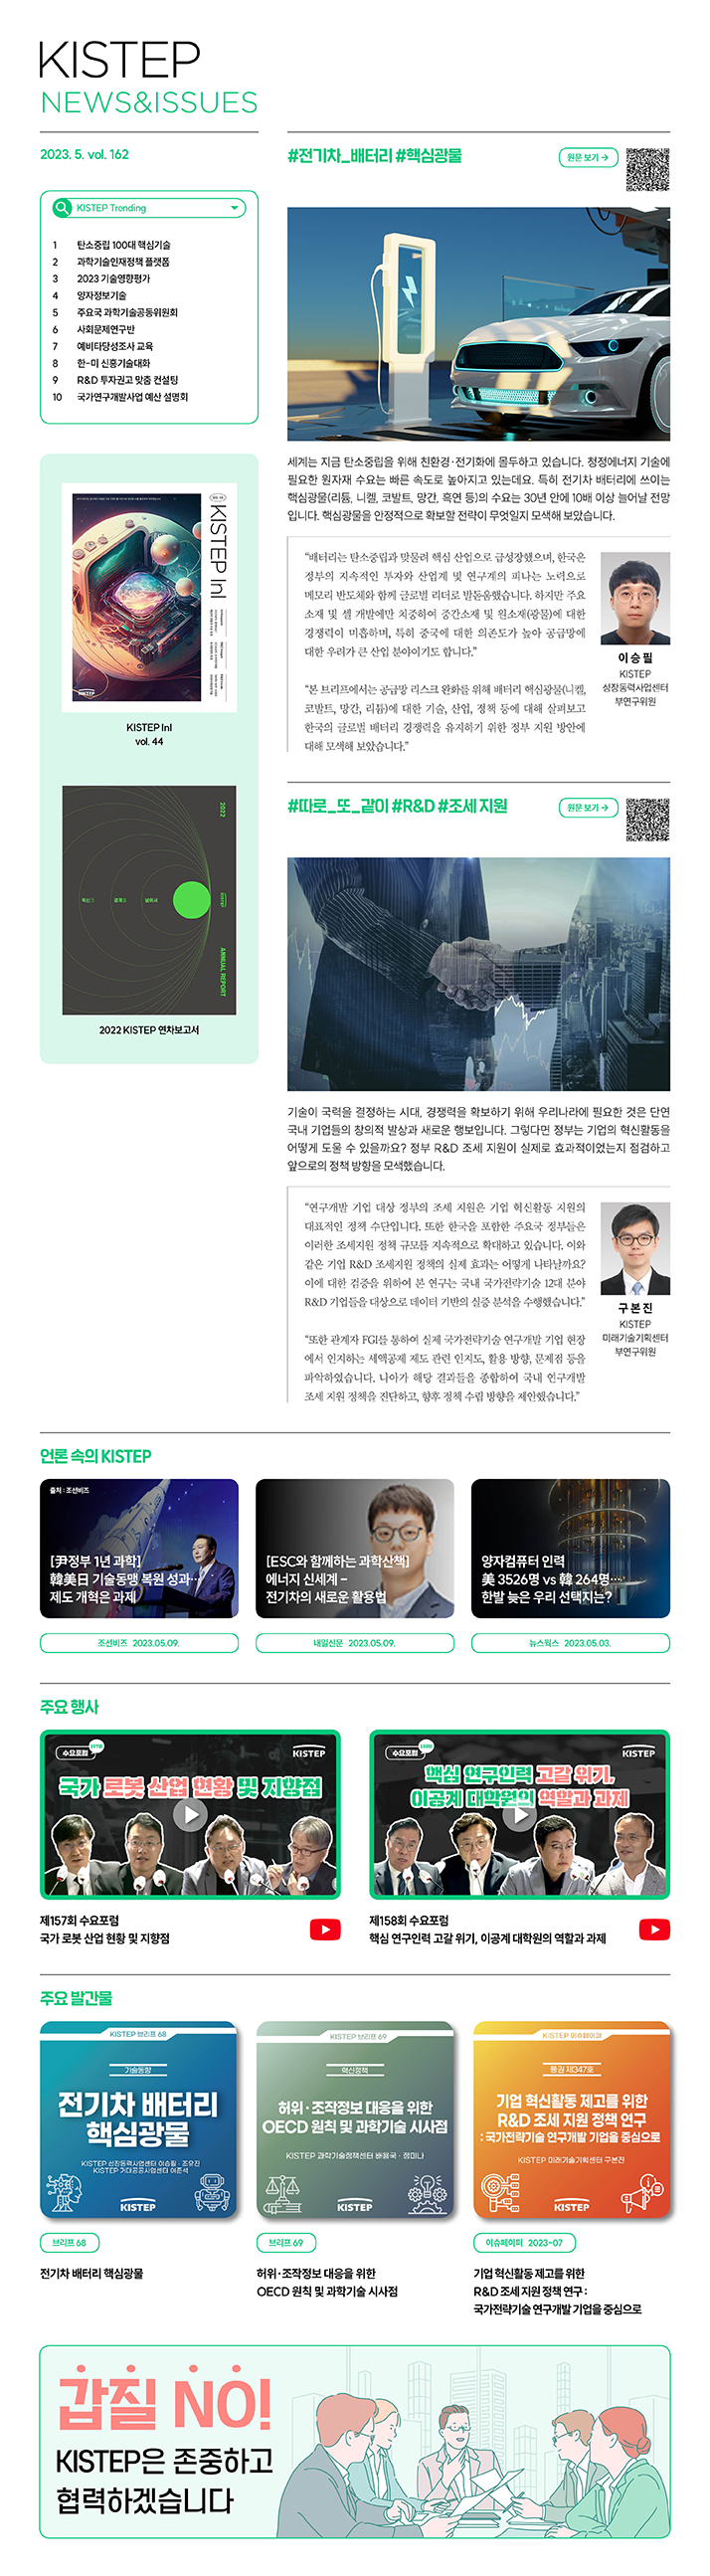 한국과학기술기획평가원